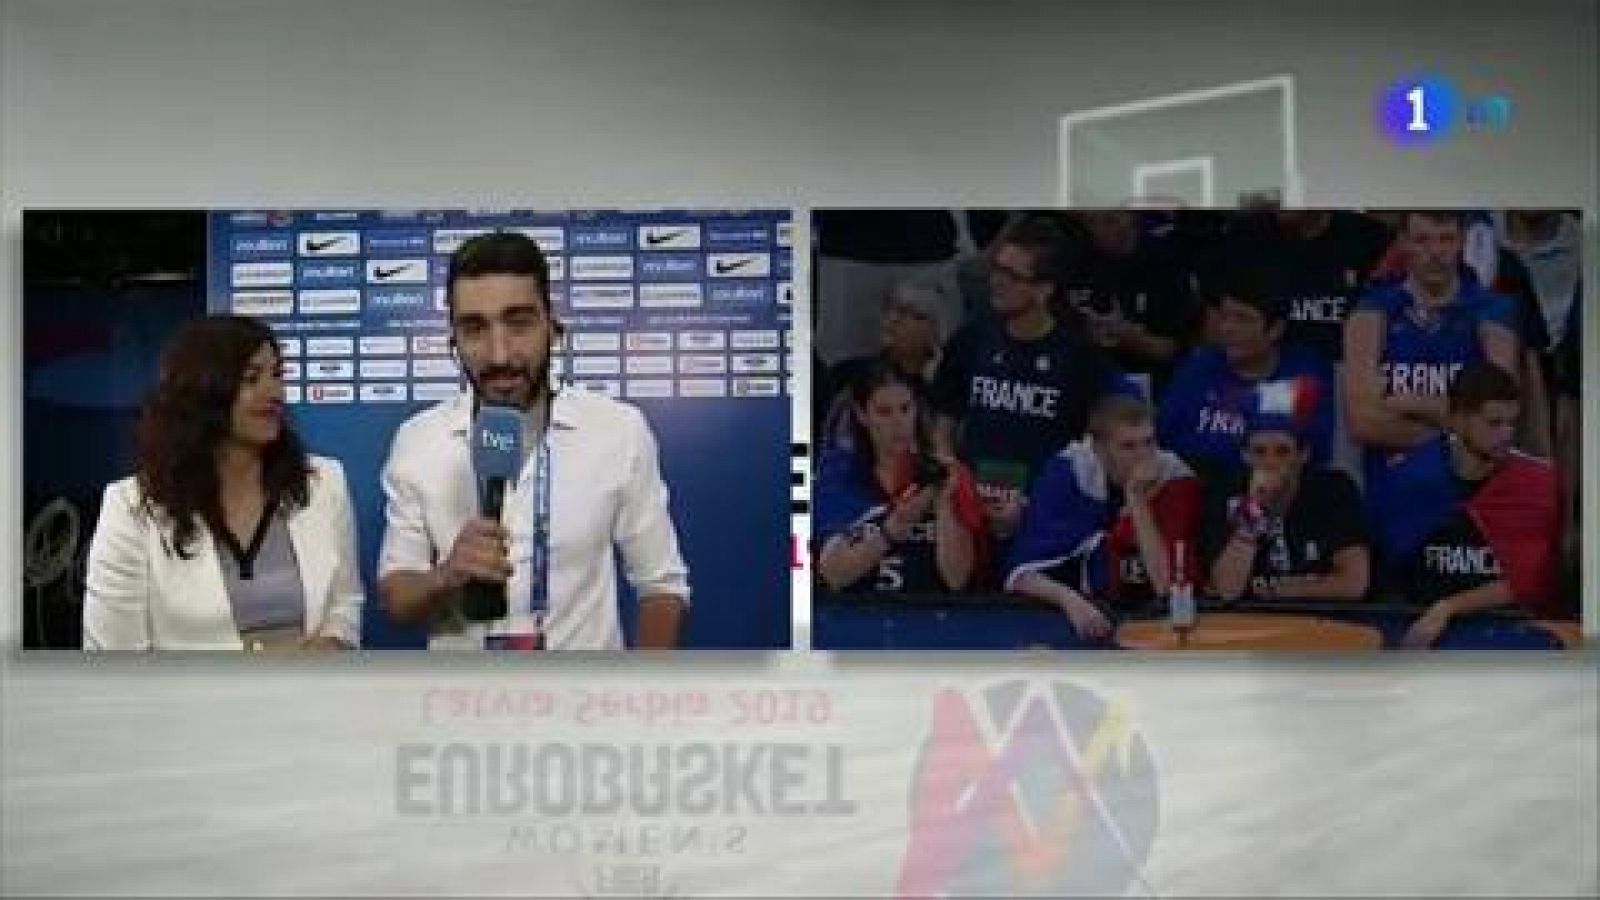 Eurobasket 2019 | Rienda: "Han obtenido el premio al trabajo y la constancia" -RTVE.es